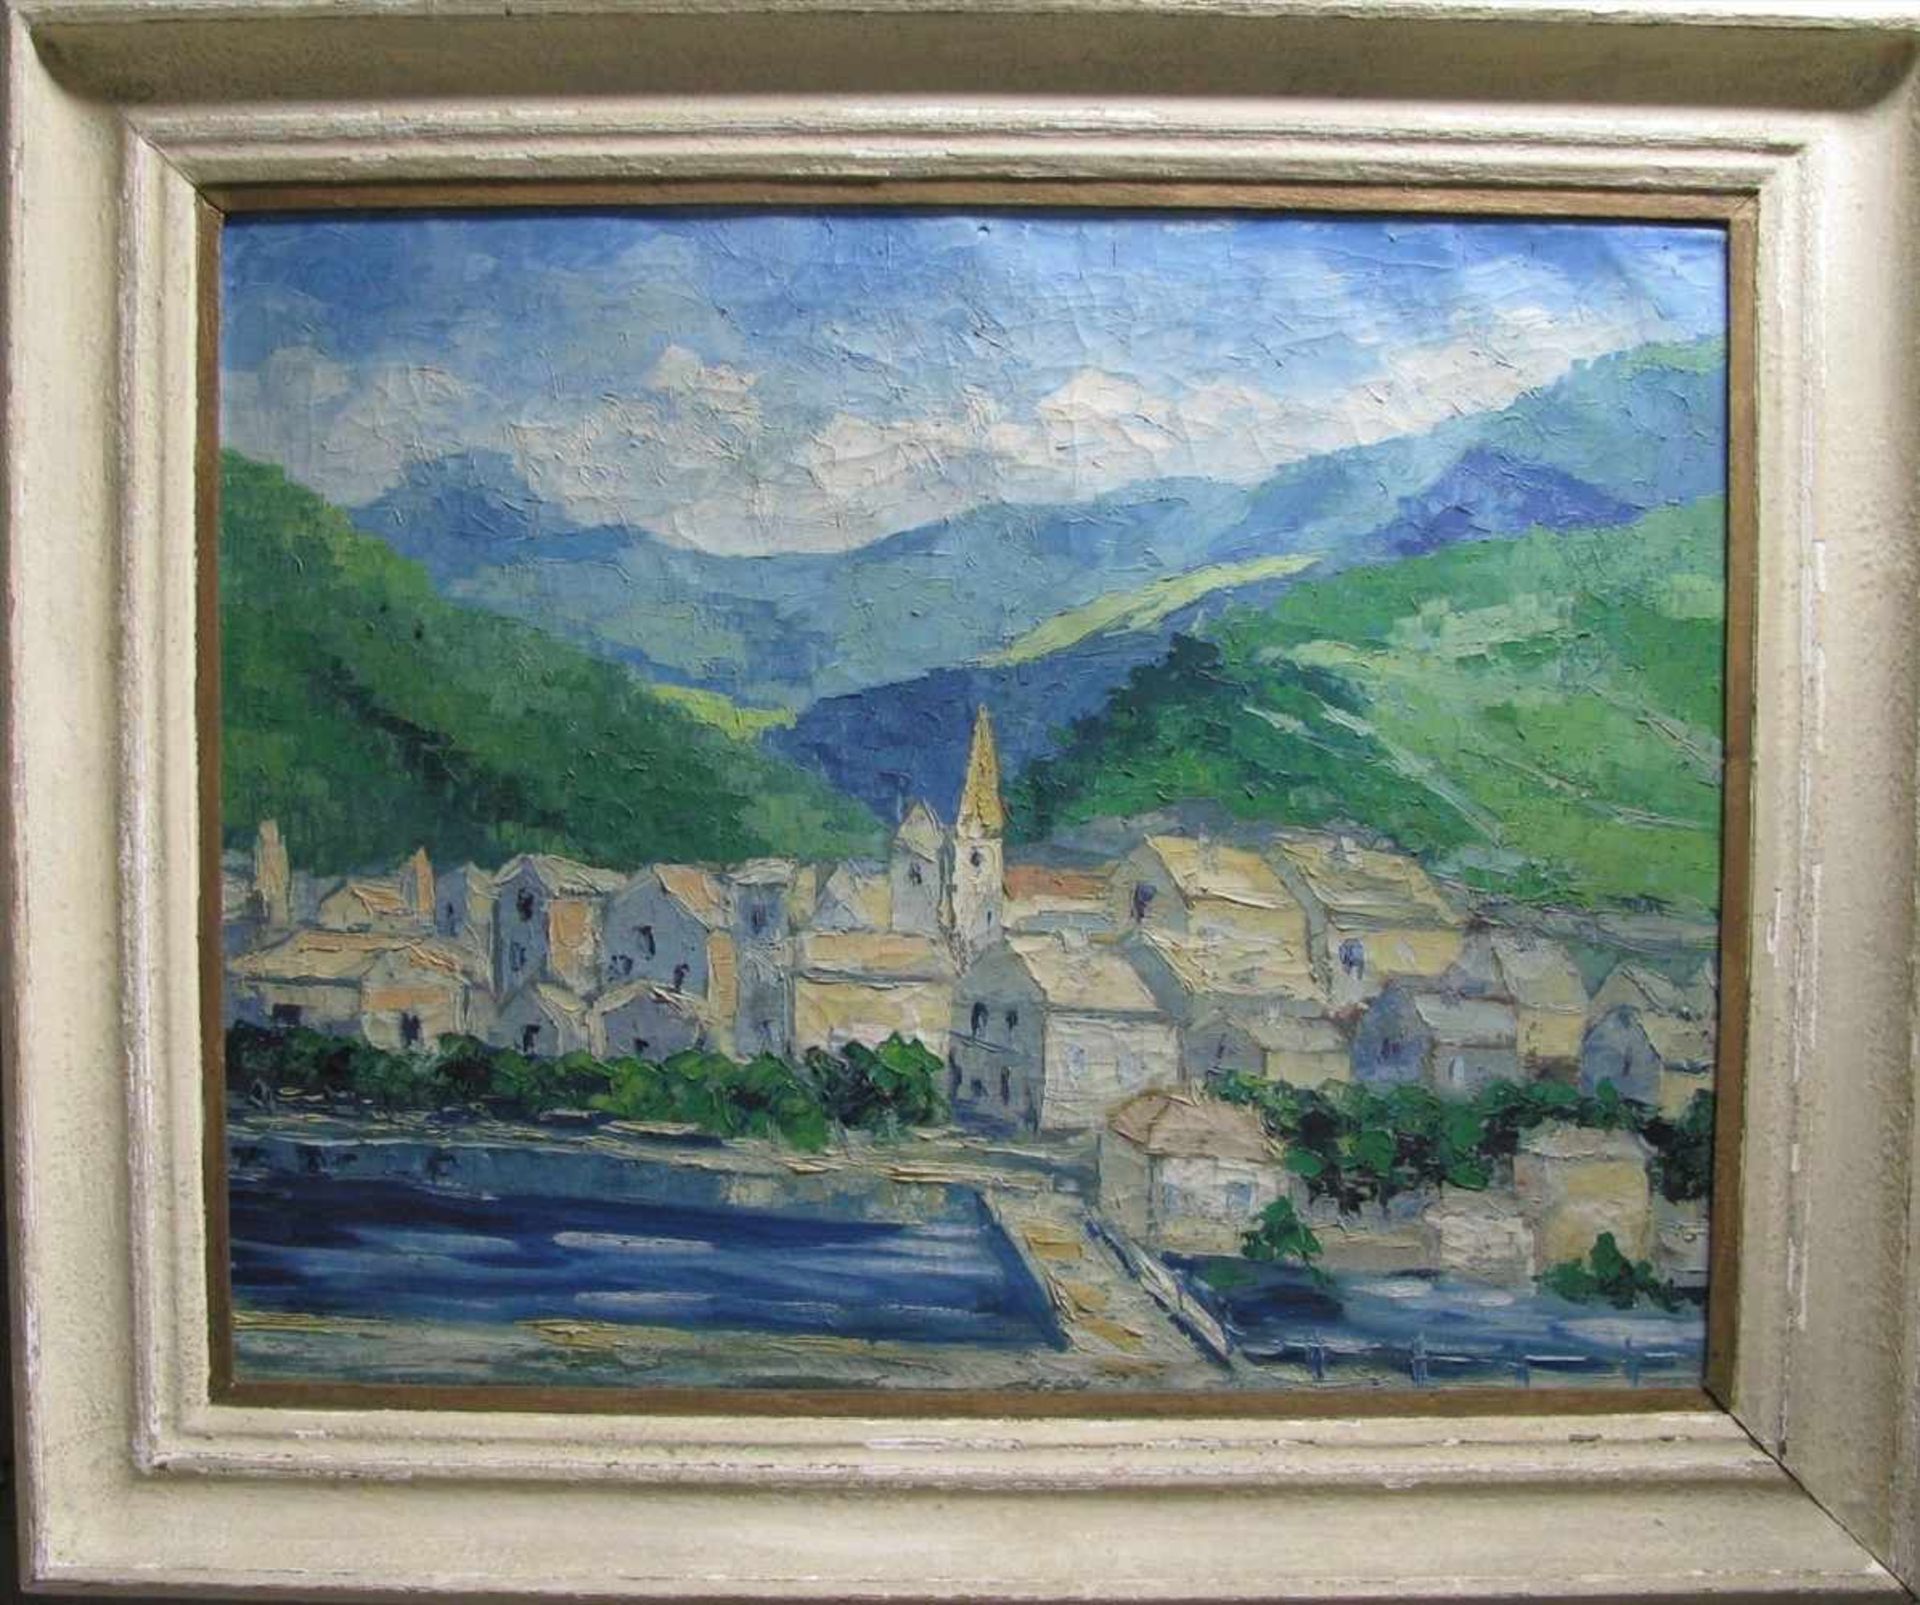 Unbekannter Impressionist, "Südliche Dorfansicht am Wasser", Öl/Leinwand, 61 x 77 cm, R.